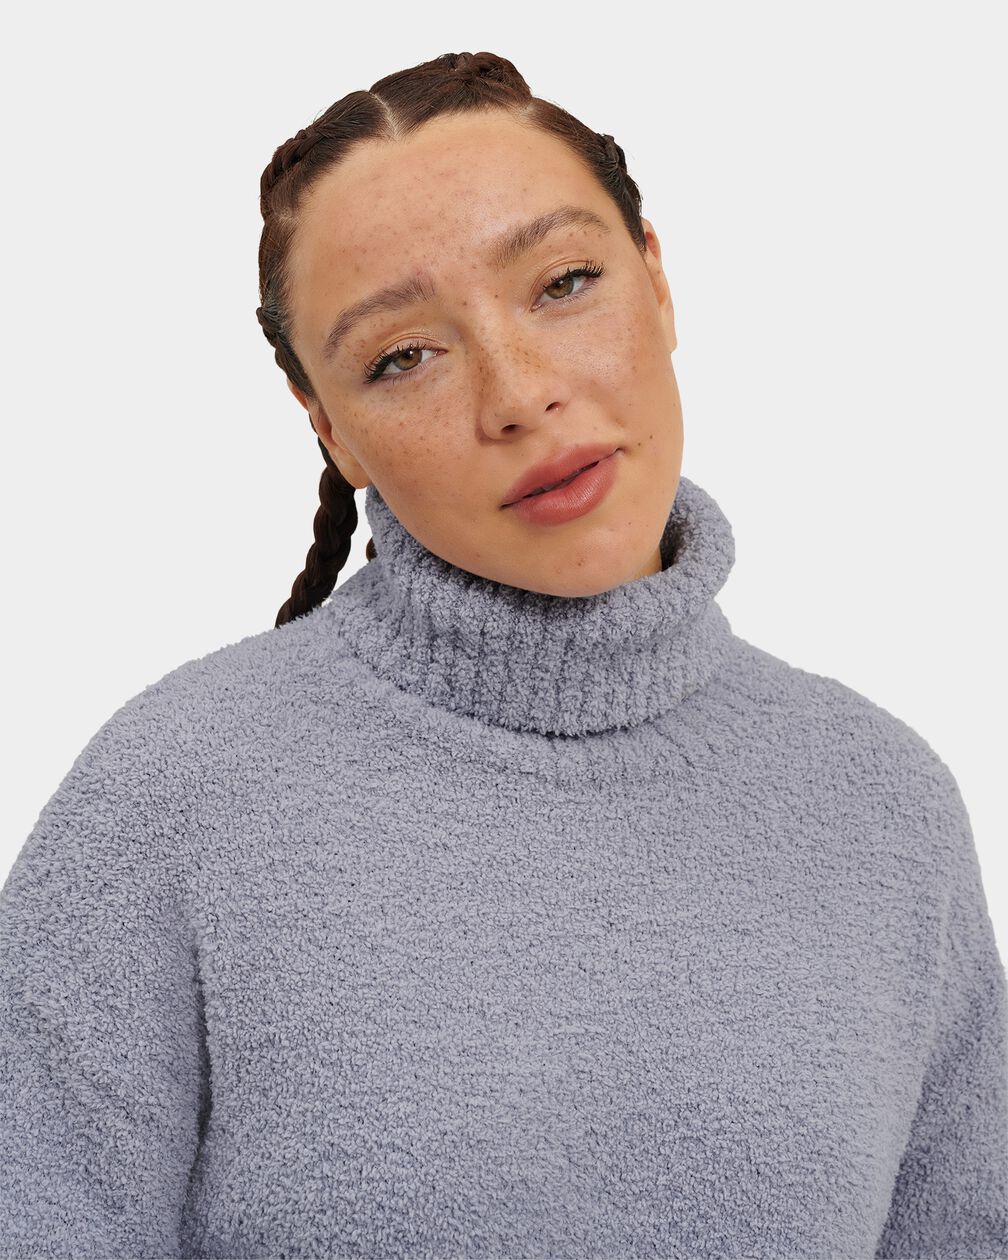 Ylonda Turtleneck Sweater